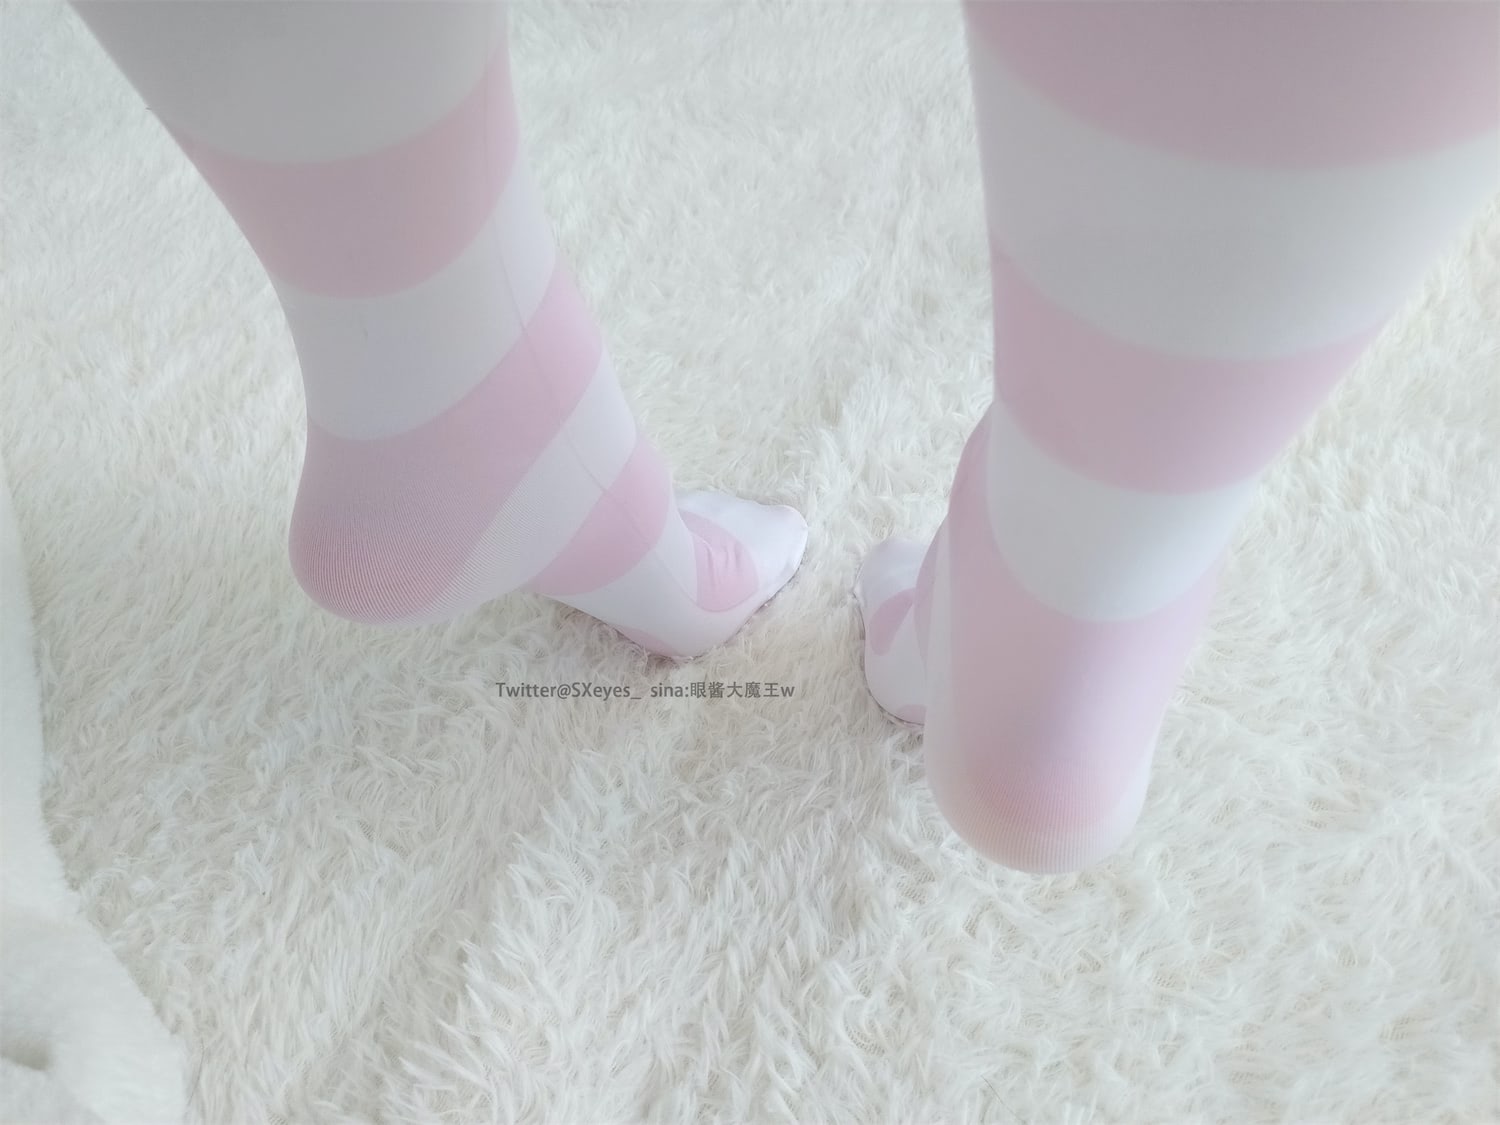 眼酱大魔王w 粉色条纹袜6